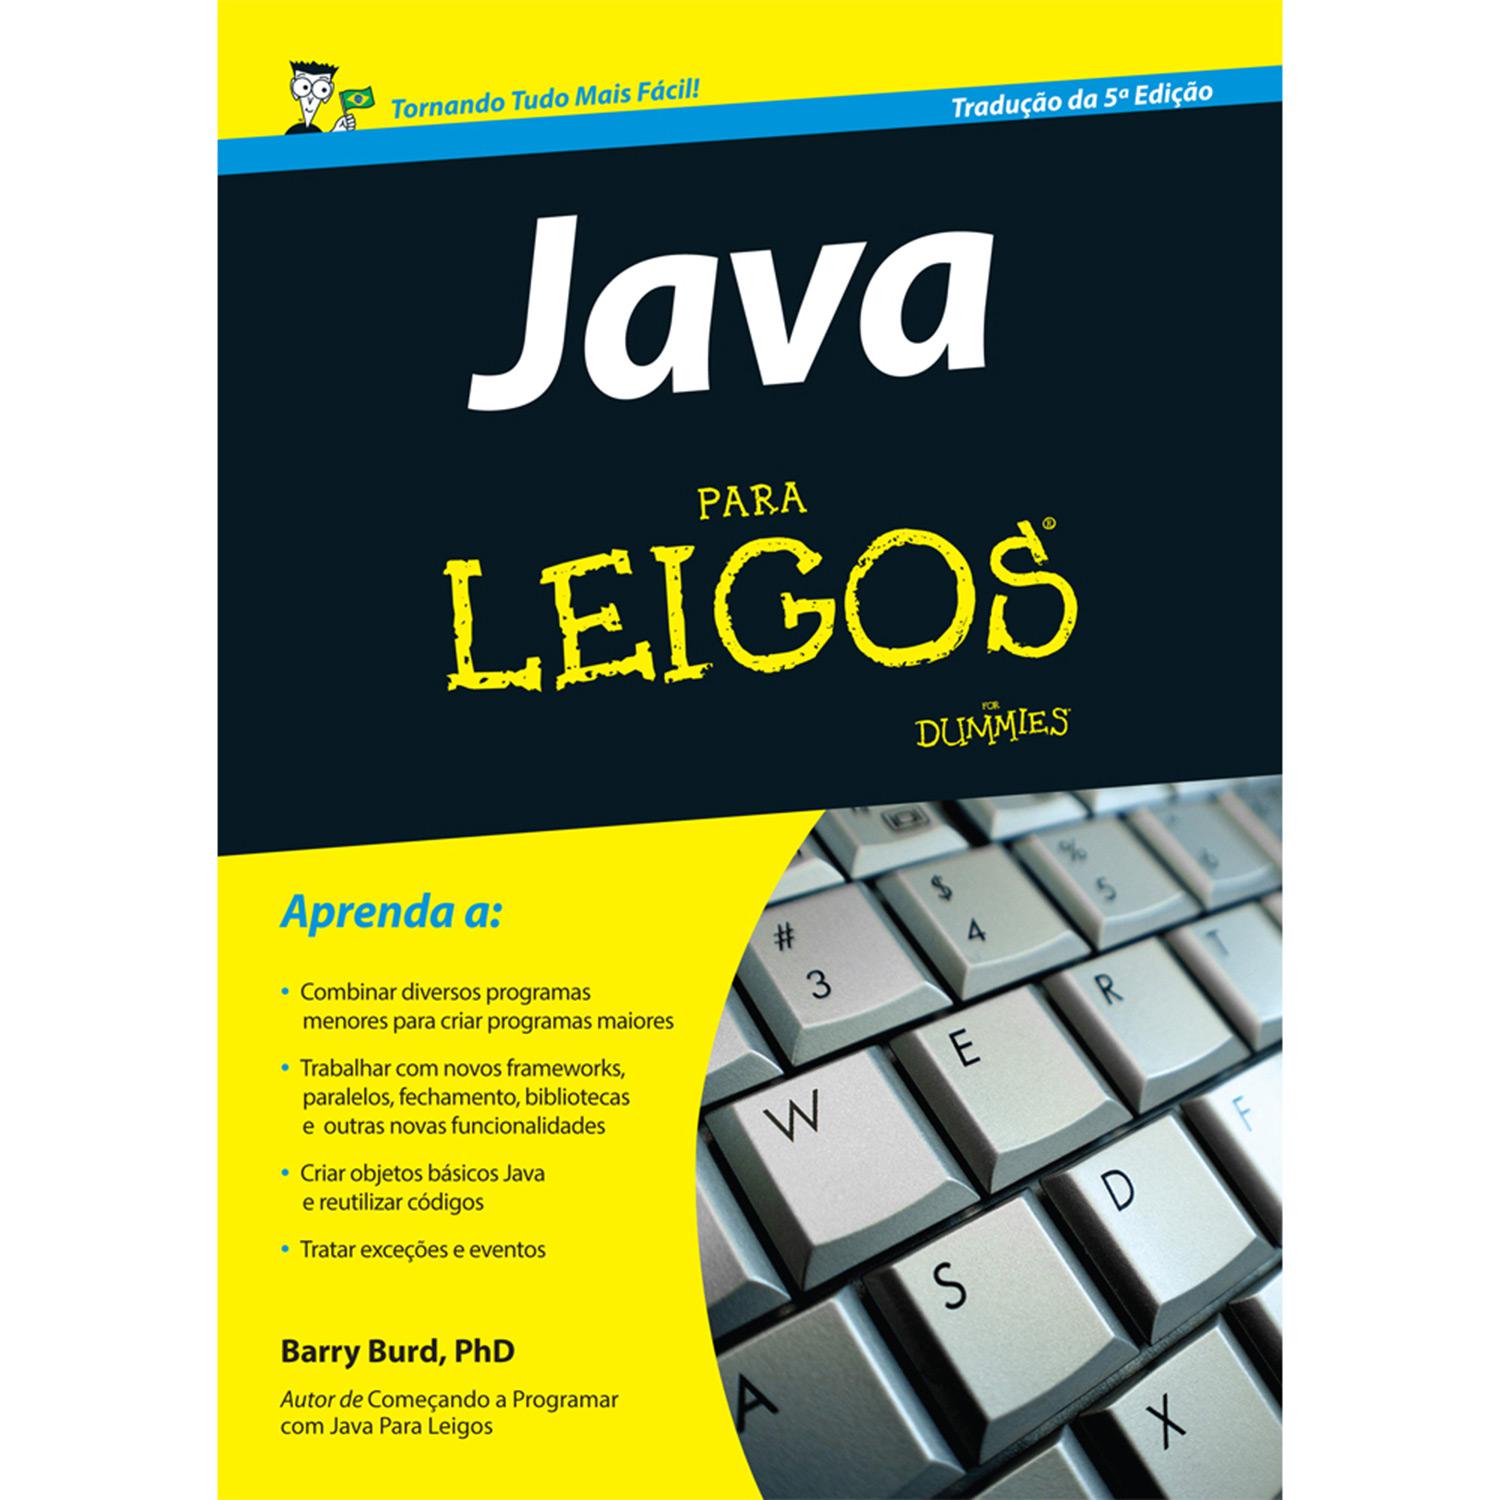 Livro - Java para Leigos é bom? Vale a pena?